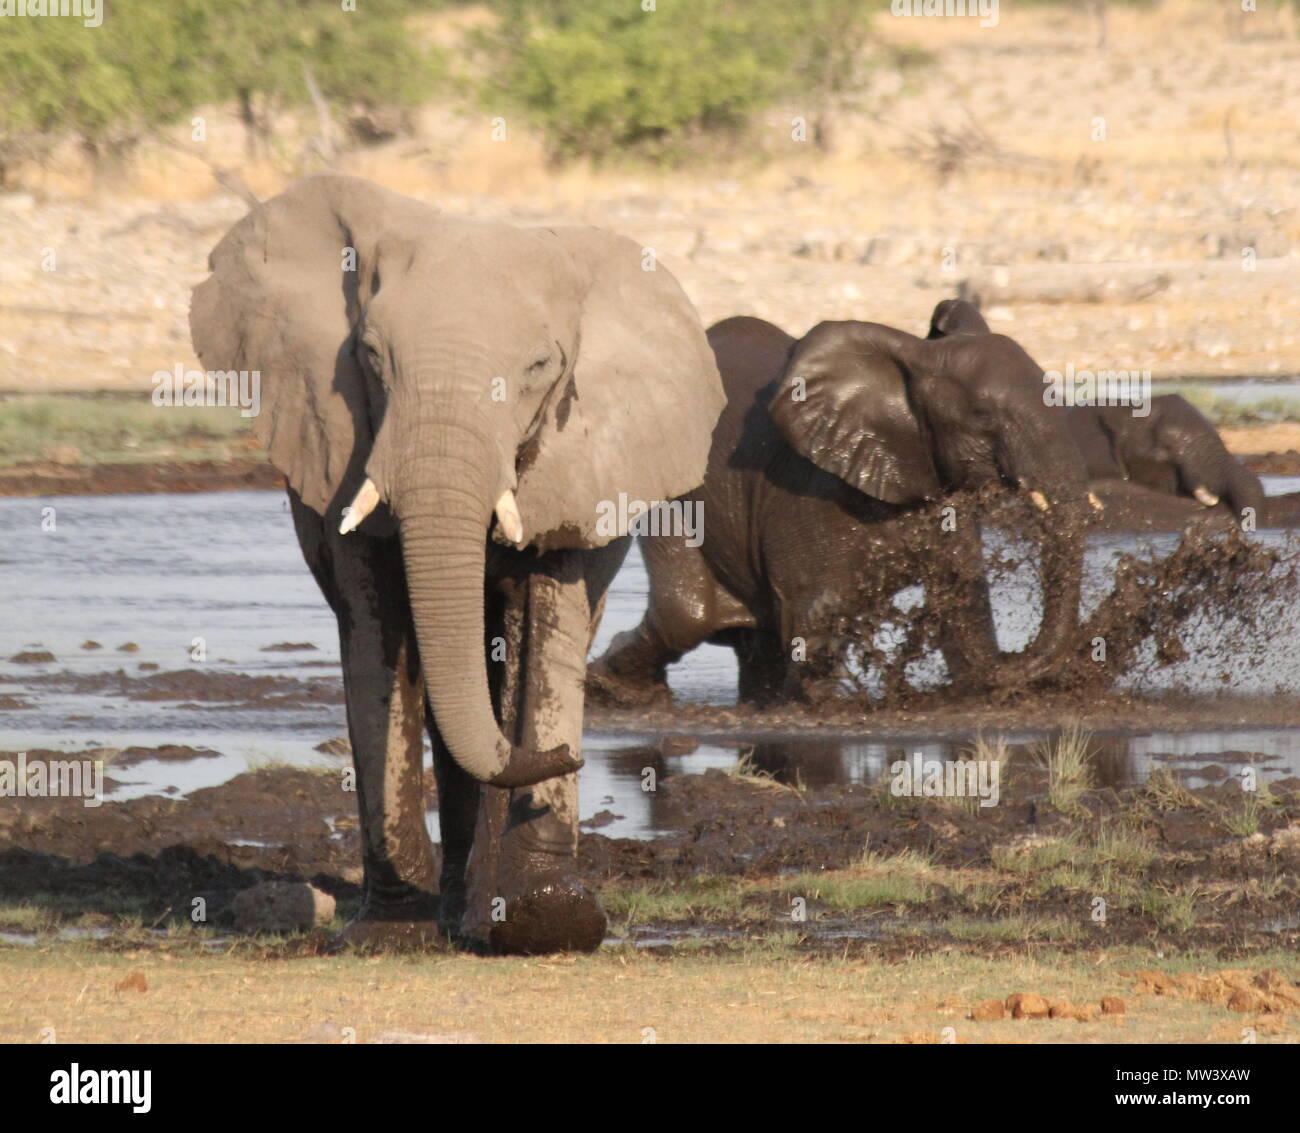 Pack of Elephants bathing Stock Photo